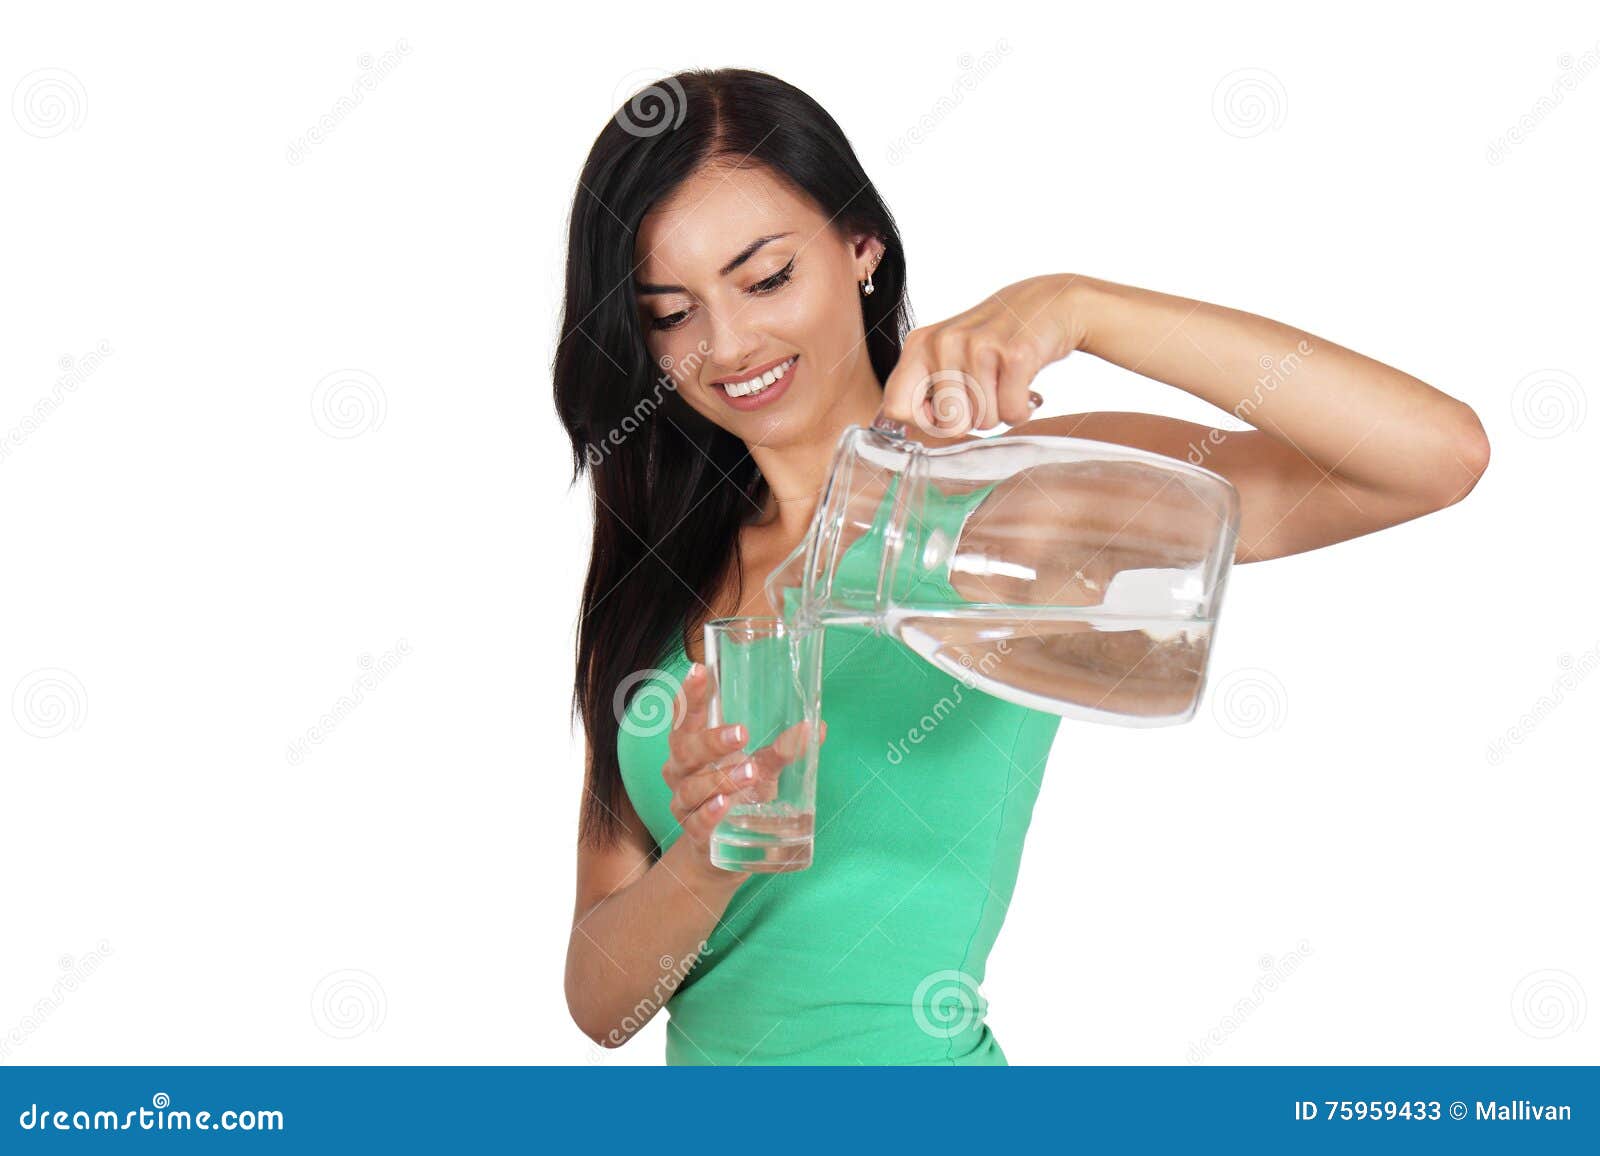 Девушка льет воду. Девушка держит кувшин. Девушка держит в руках воду. Девушка держит в руках графин. Кувшин для воды.